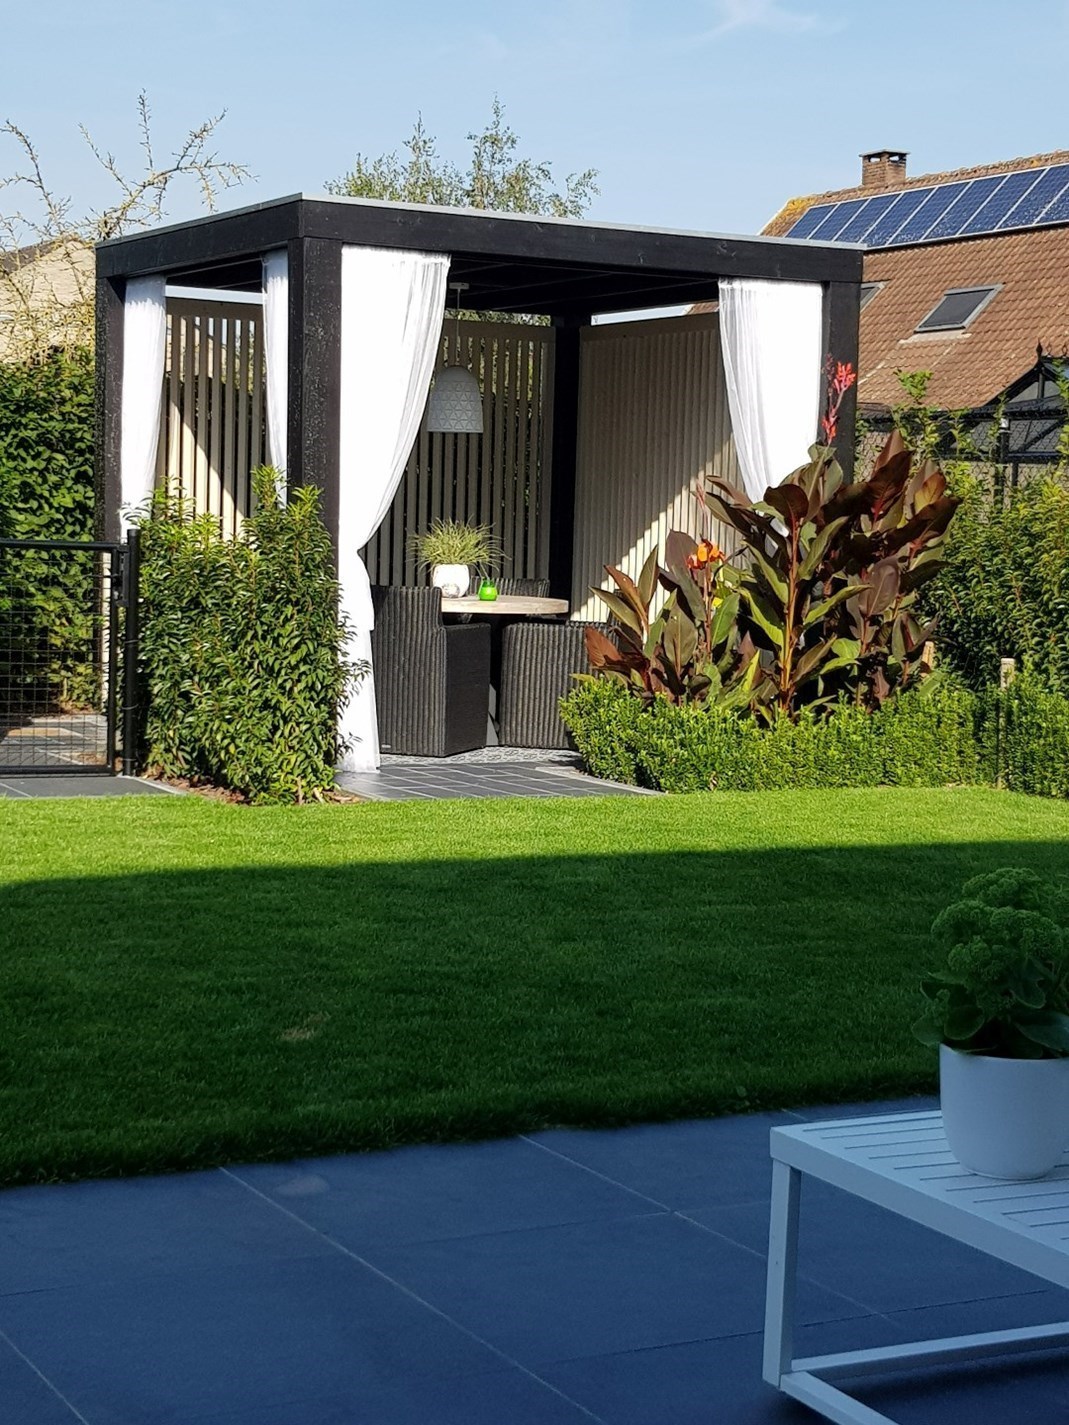 Nieuwe, super energiezuinige villa met vijf slaapkamers en zonnige tuin in doodlopende straat te Maldegem.  foto 13